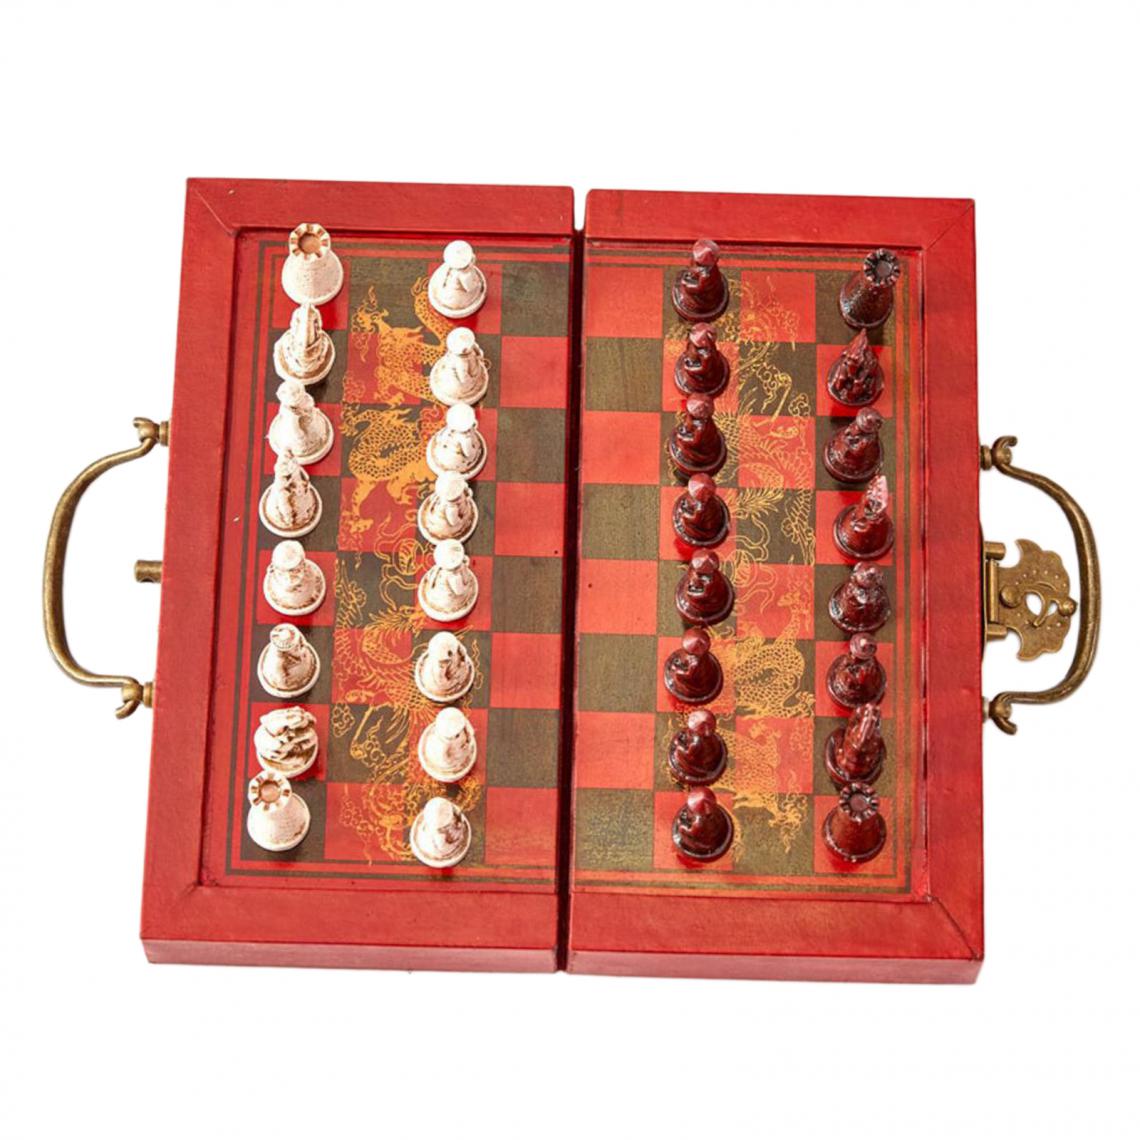 marque generique - Voyage Jeu d'échecs Chinois Antique Figurines Chessman Pièces Jeu d'échecs avec Pliable Échiquier - Jeux de stratégie